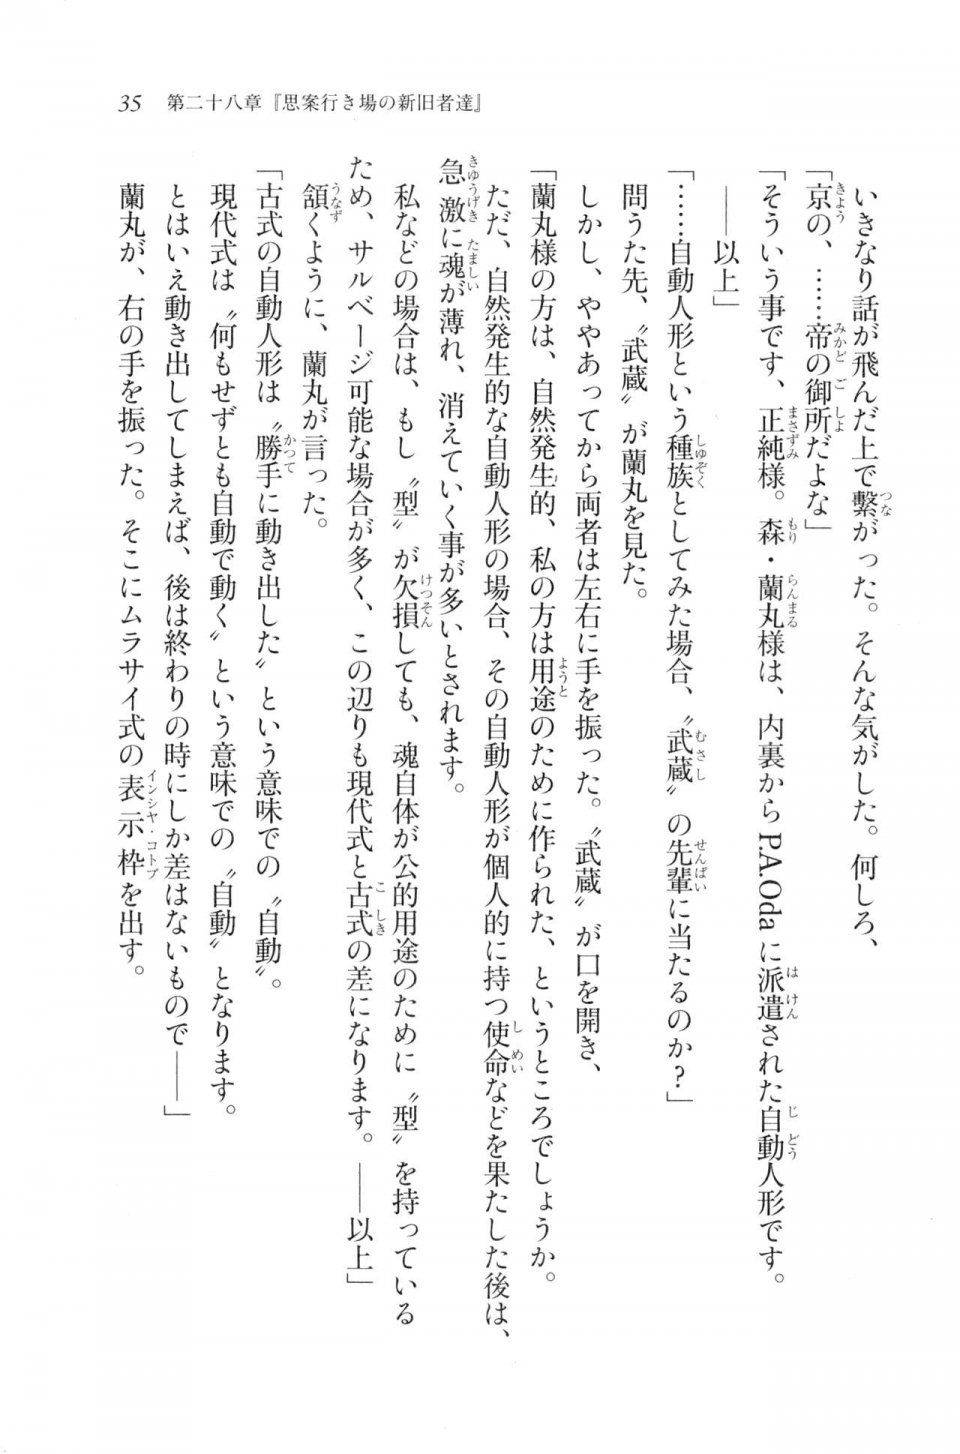 Kyoukai Senjou no Horizon LN Vol 20(8B) - Photo #35